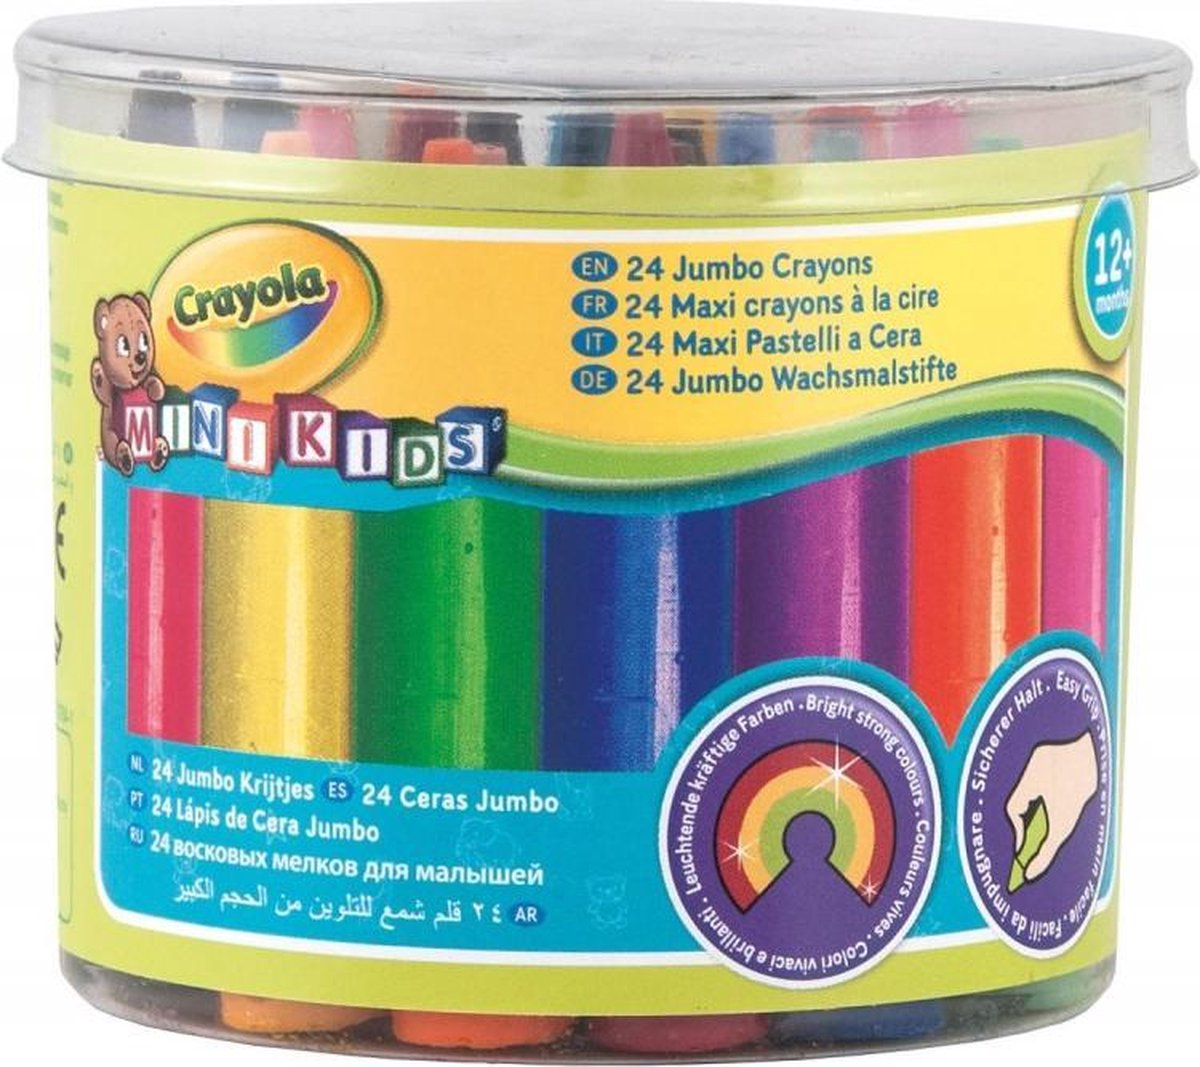 24 dikke waskrijtjes - crayola mini kids